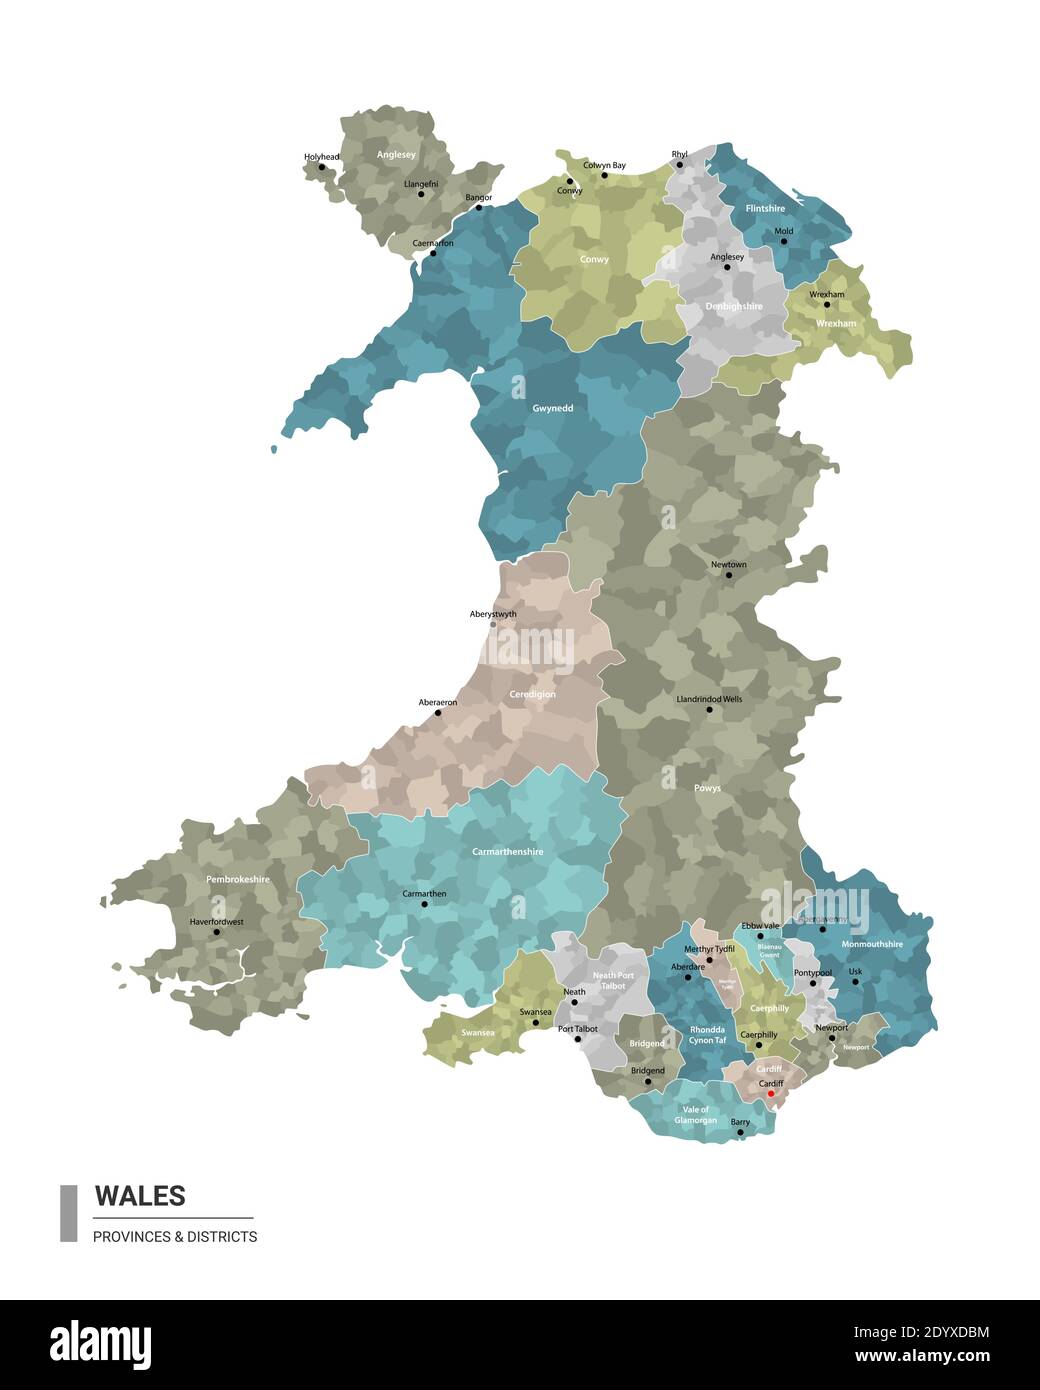 Wales hat detaillierte Karte mit Unterteilungen. Verwaltungskarte von Wales mit Bezirken und Stadtnamen, farbig nach Bundesstaaten und Verwaltungsbezirken. Stock Vektor